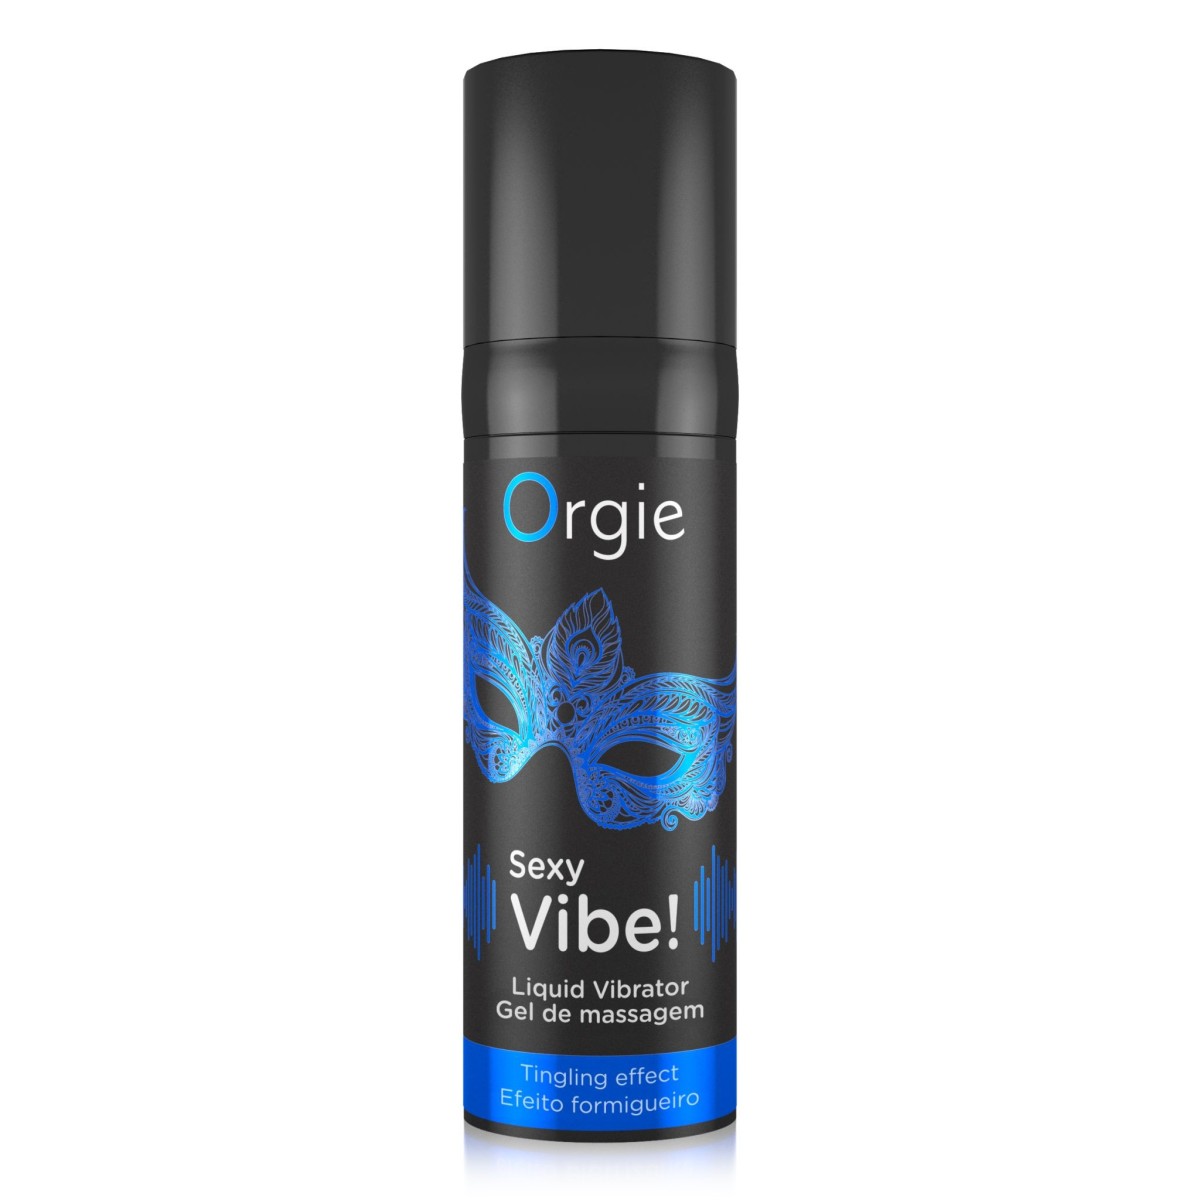 Orgie Sexy Vibe! Liquid Vibrator 15 ml, stimulační gel s vibračním efektem